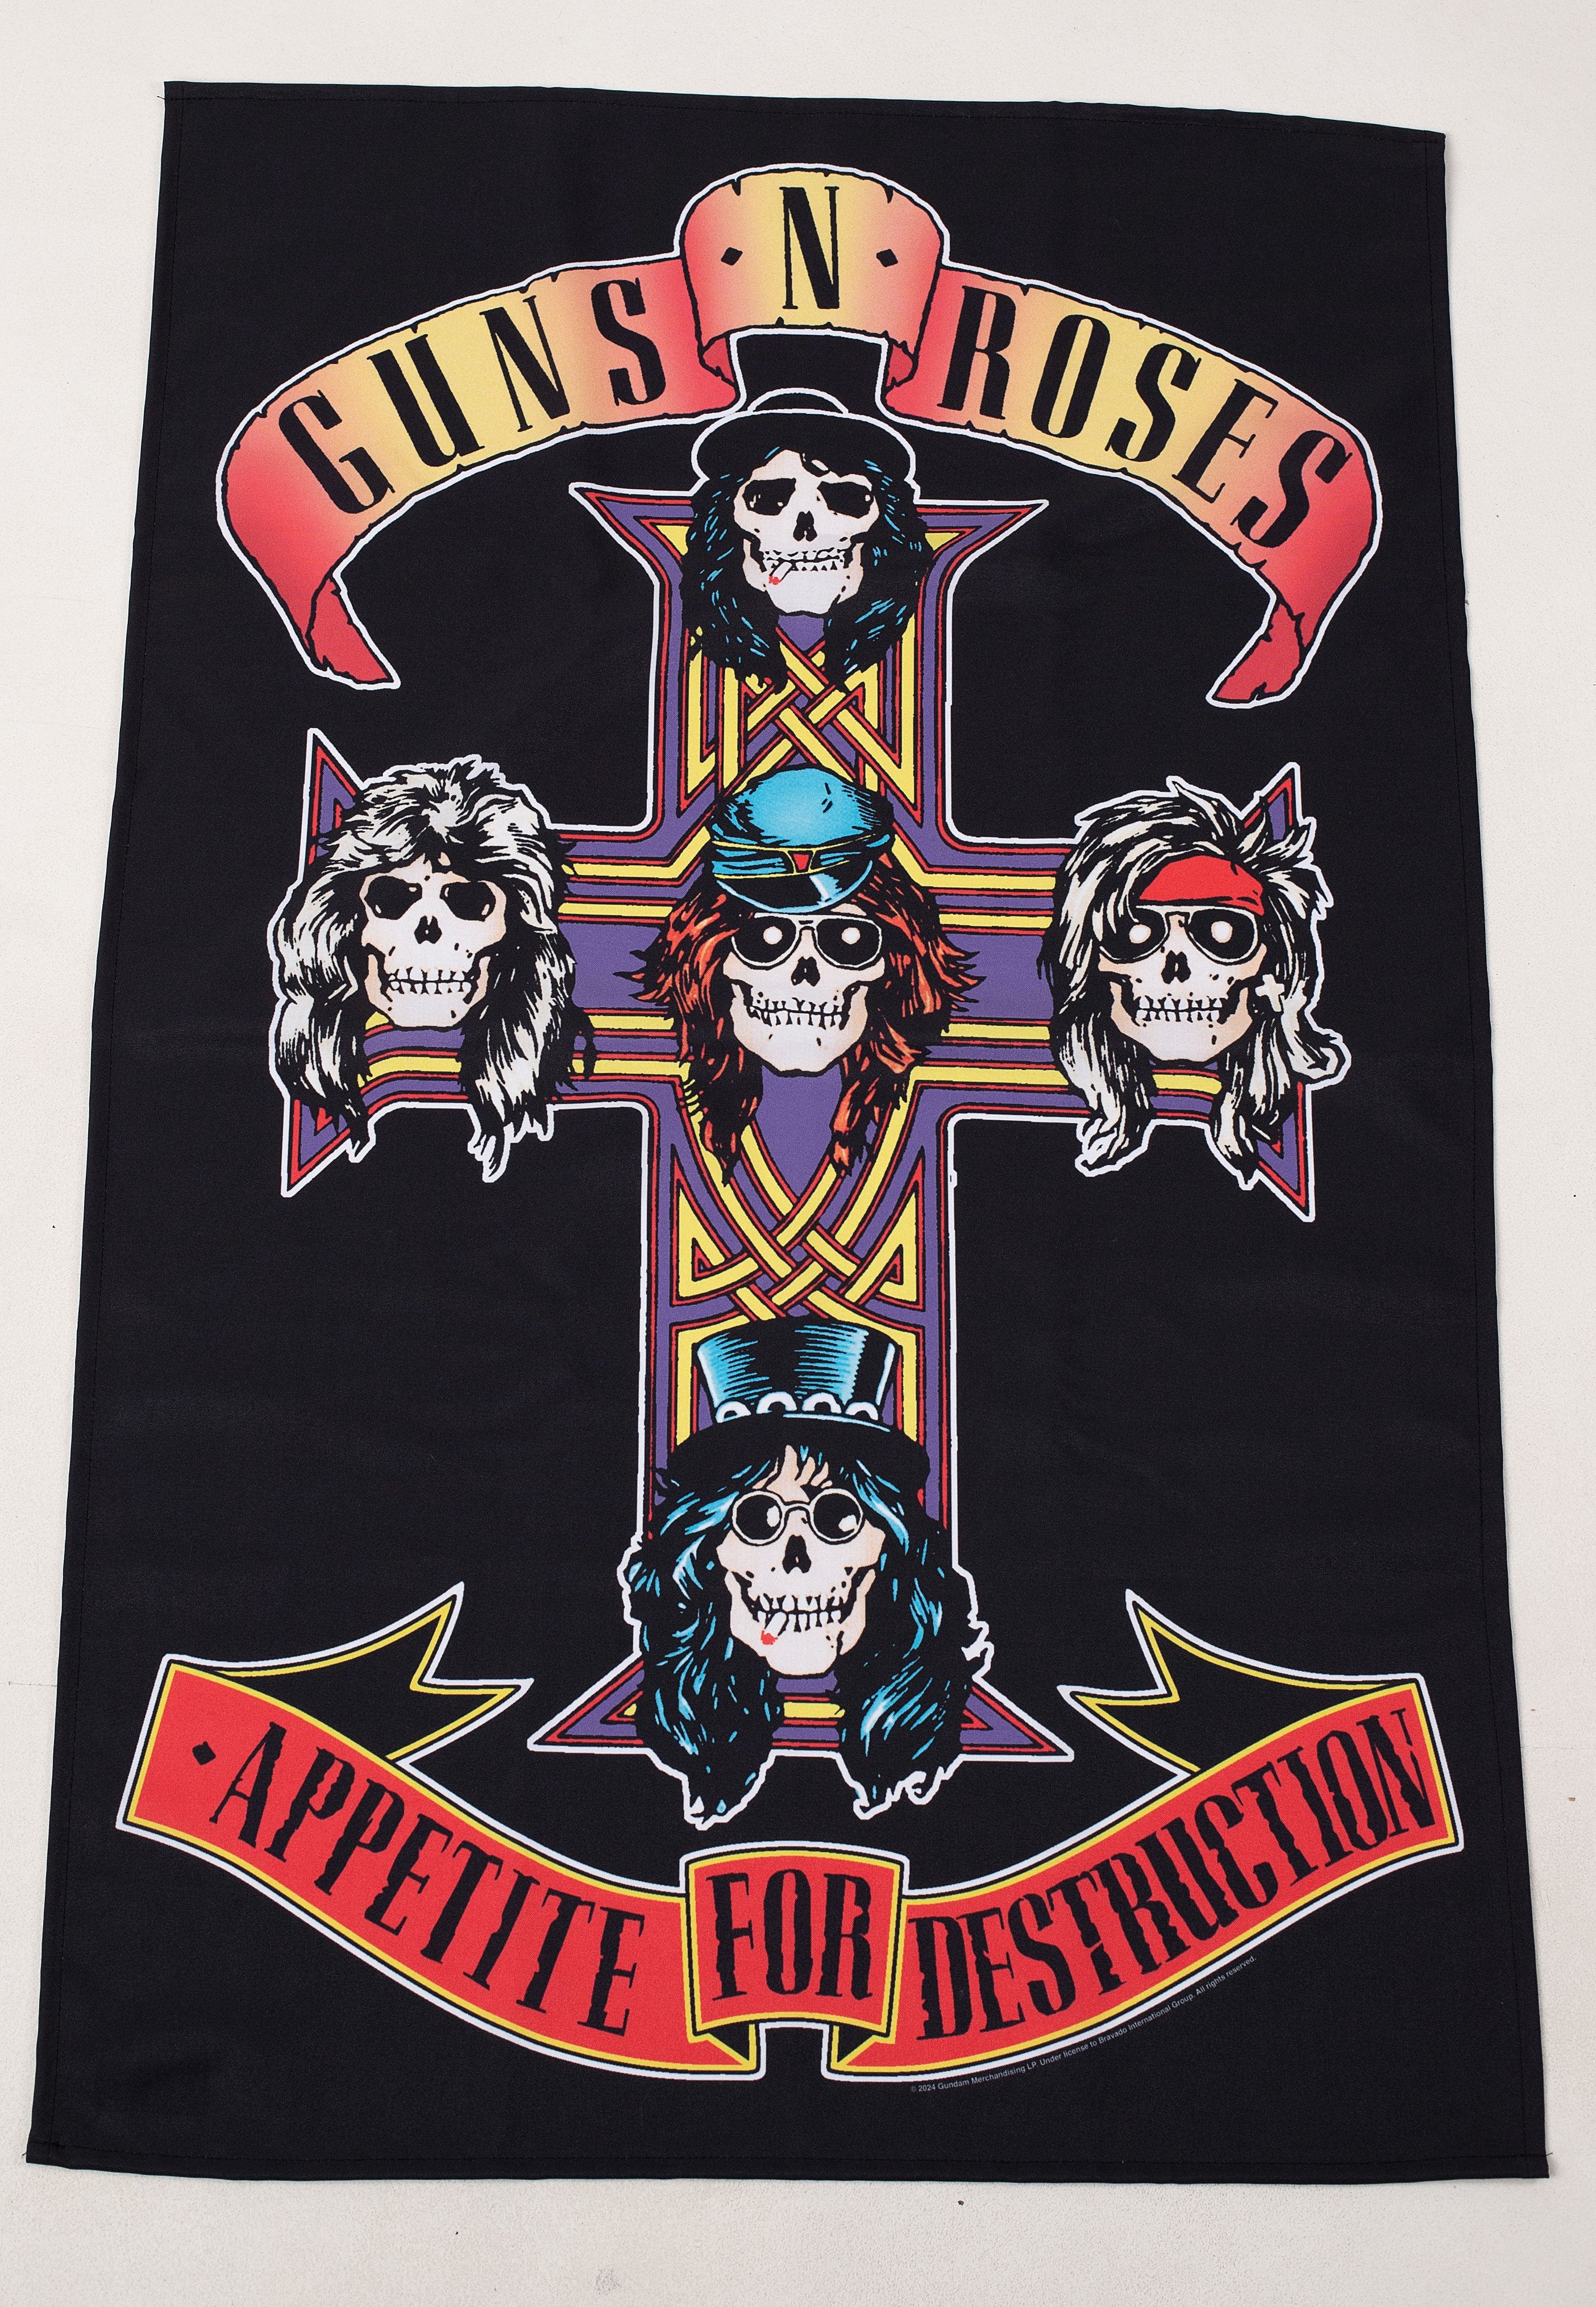 Guns N' Roses - Appetite For Destruction - Flag